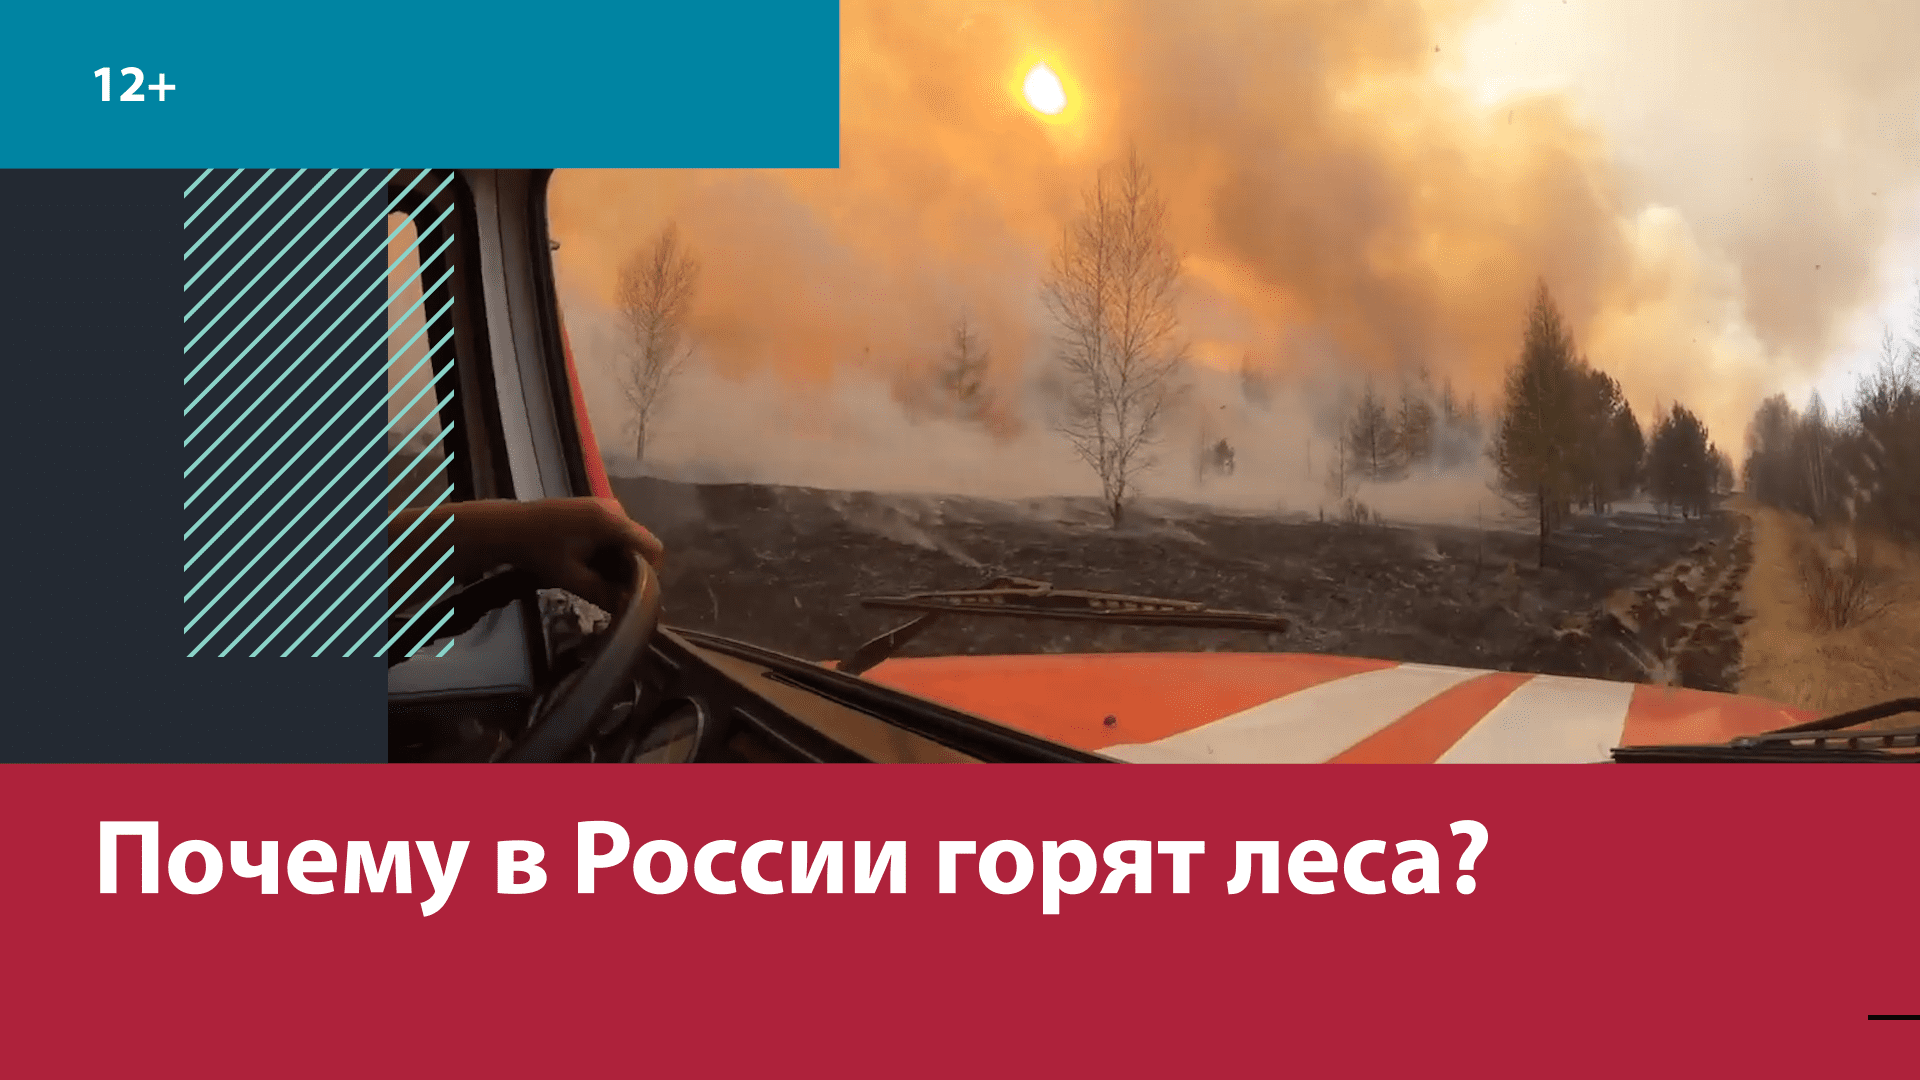 Почему в России каждый год горят леса? — Москва FM